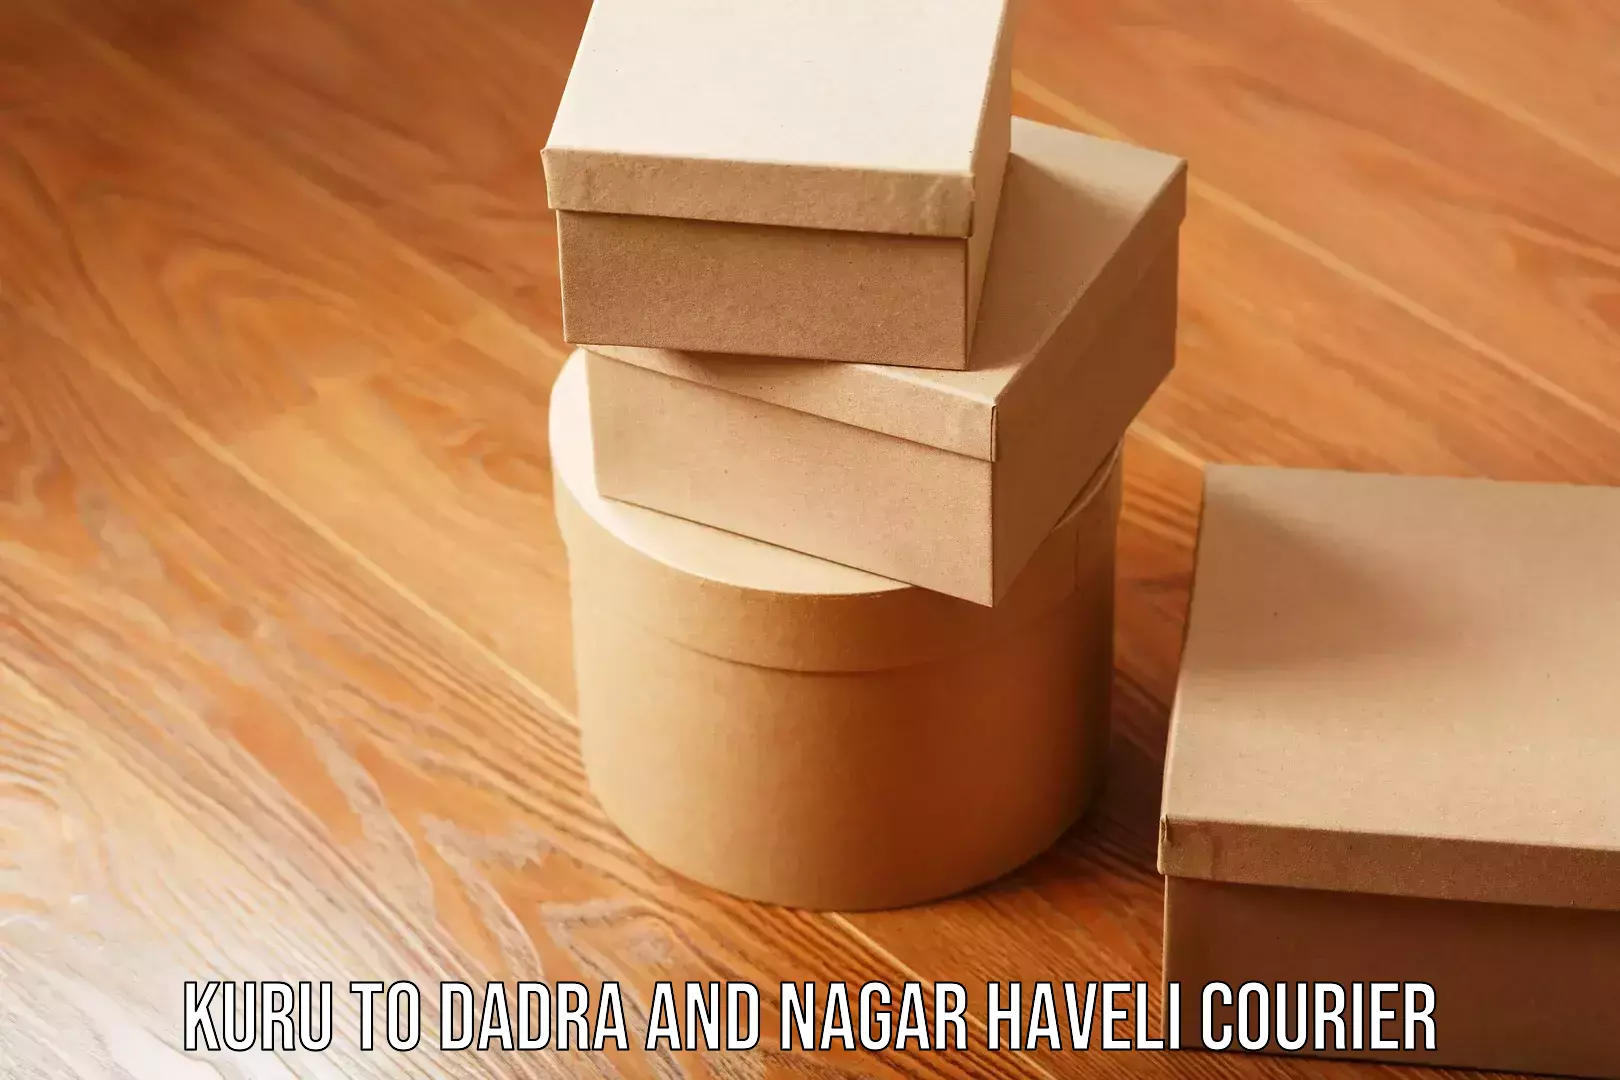 Household moving experts Kuru to Dadra and Nagar Haveli